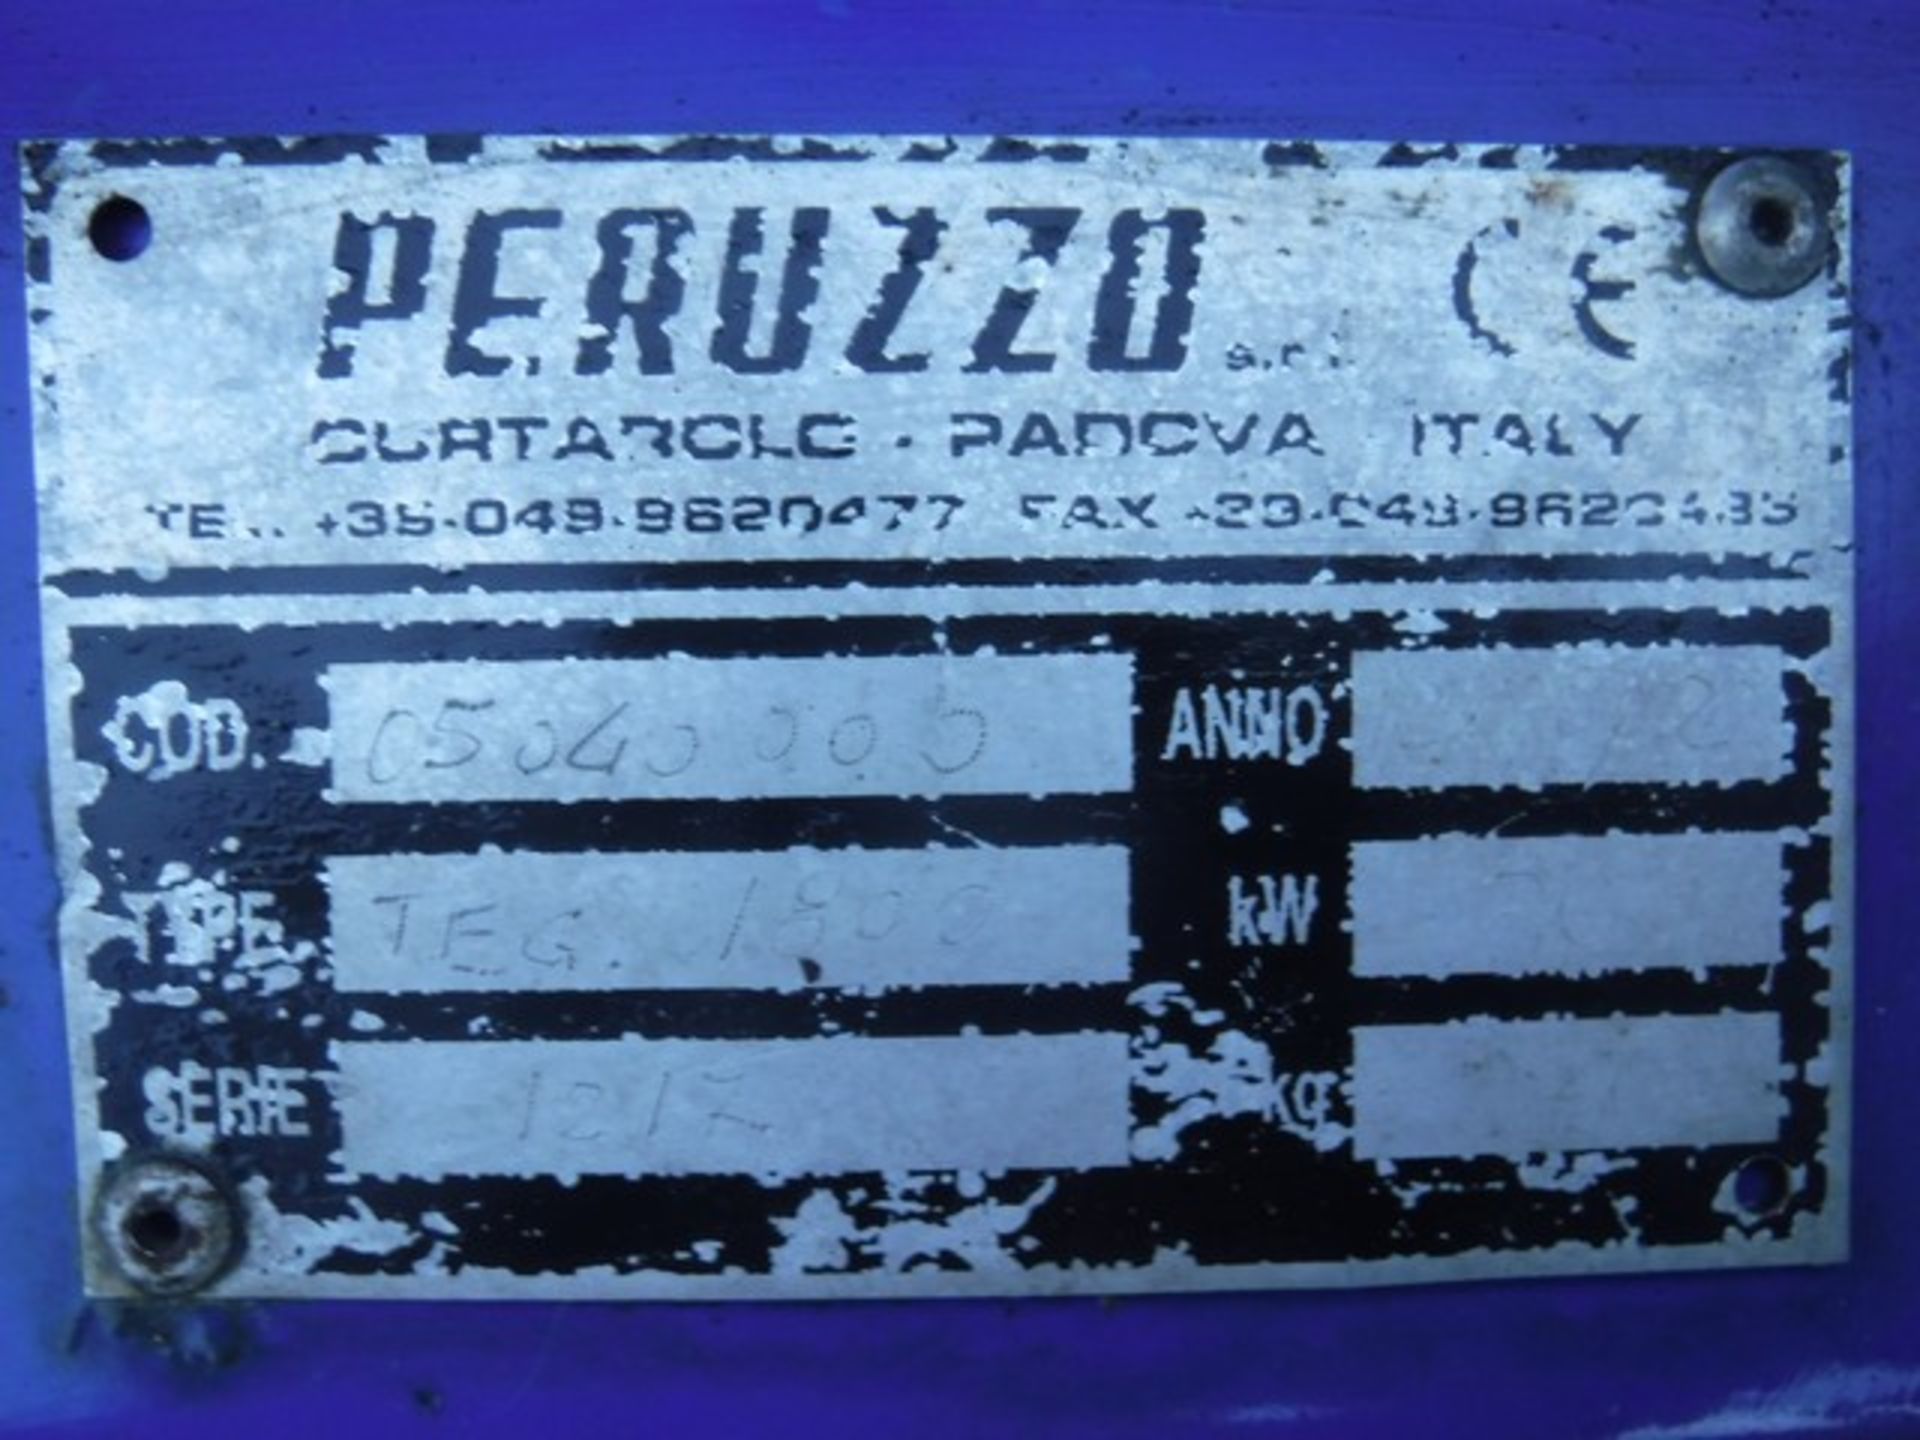 PERUZZO TEG 1800 flail mower - Image 3 of 3